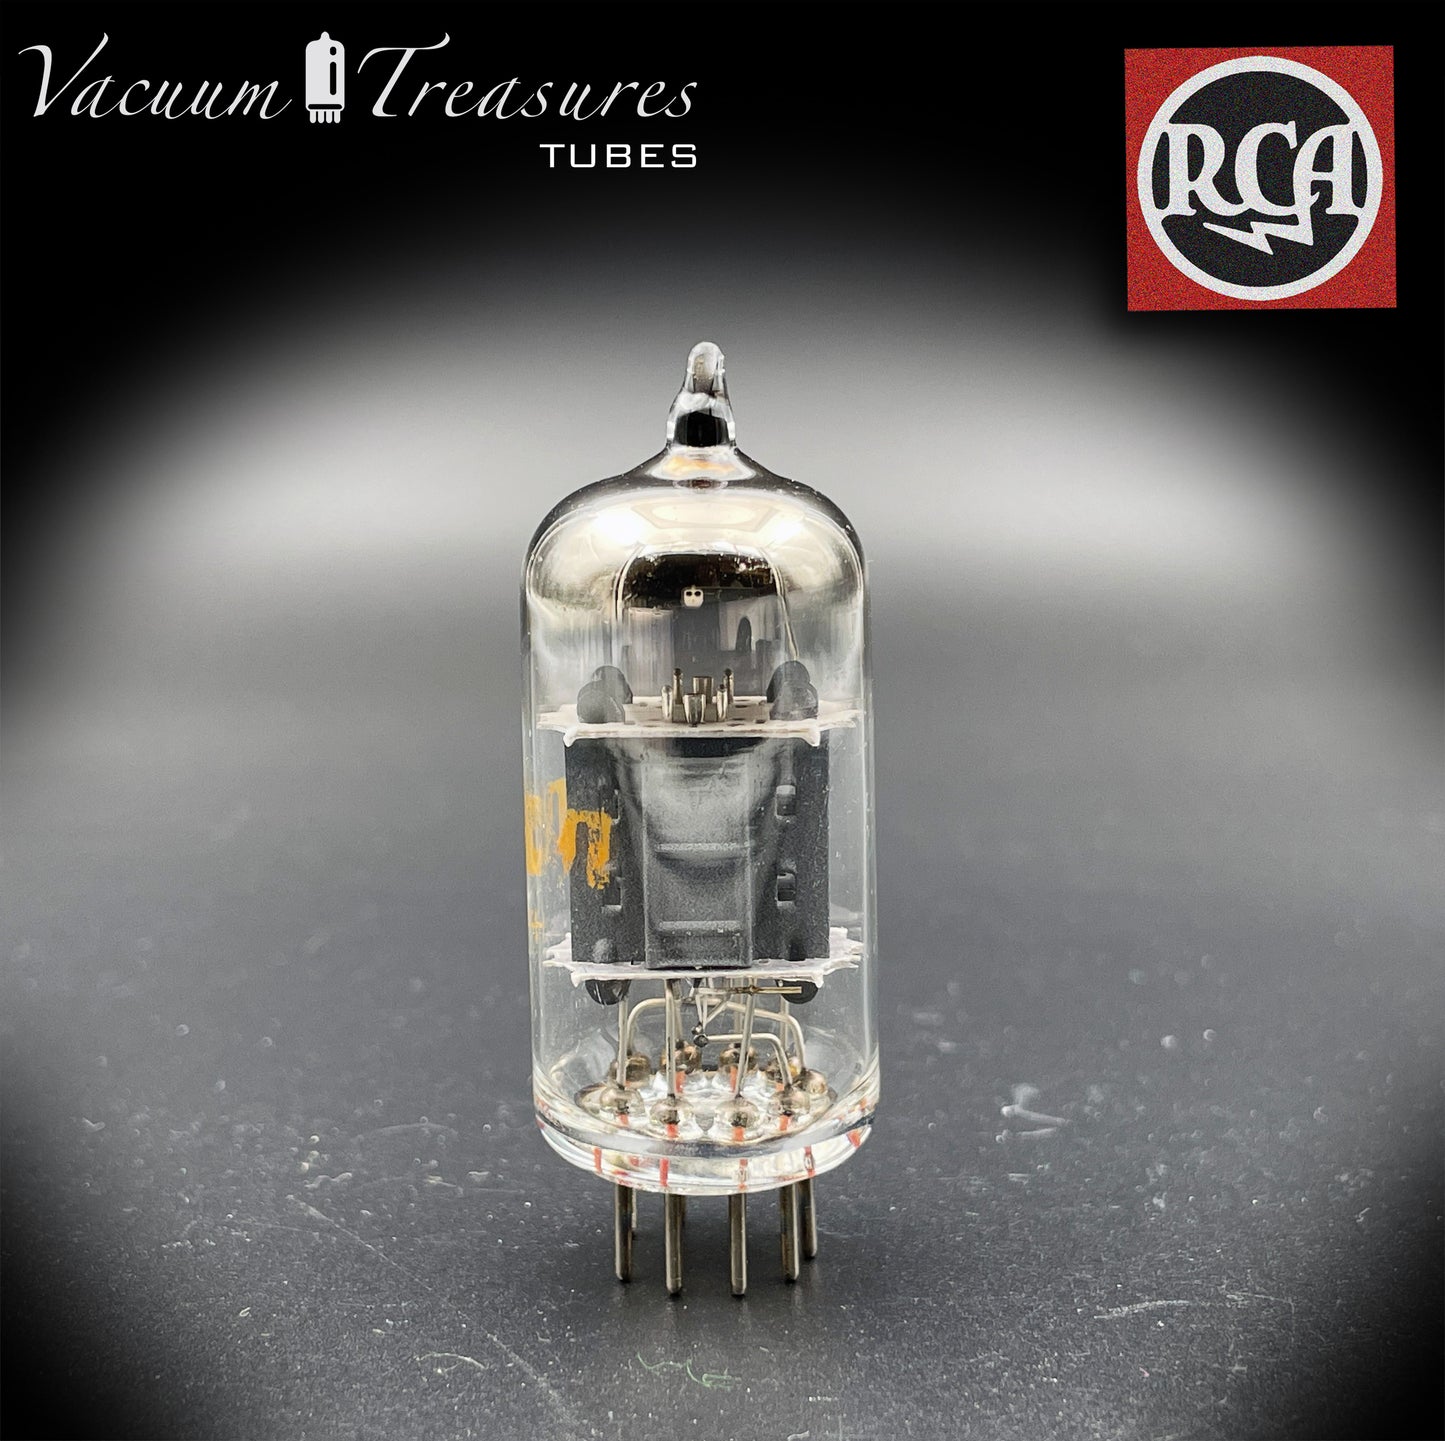 7025 (12AX7 ECC83) RCA Short Plates O Getter Low Noise & Microphonics Getestet Röhre HERGESTELLT IN DEN USA